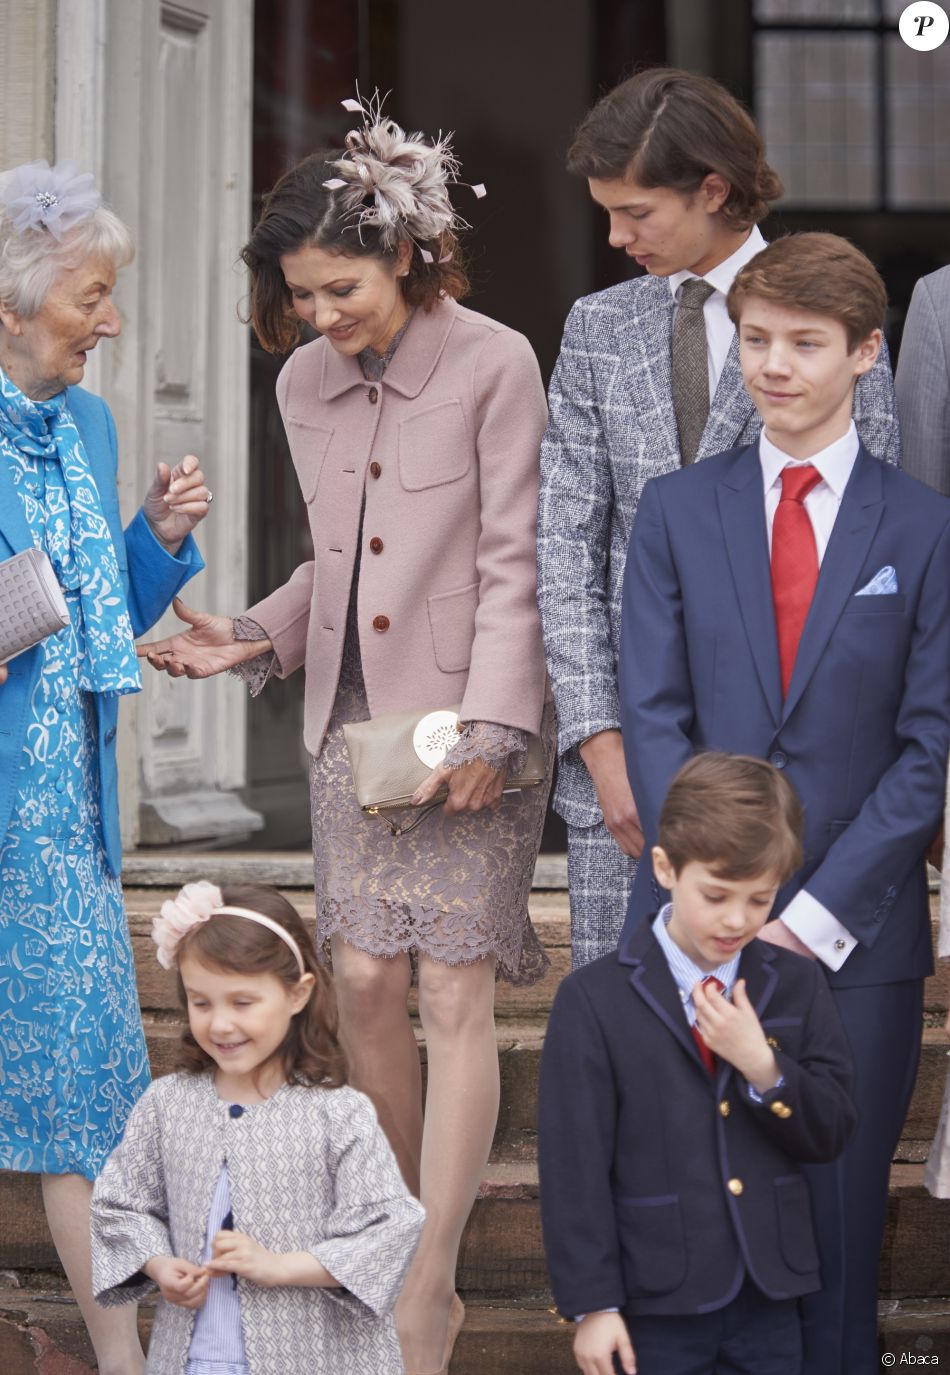  La comtesse Alexandra de Frederiksborg, sa mère Christa Manley, son fils aîné le prince Nikolai et (au premier plan) la princesse Athena et le prince Henrik lors de la confirmation du prince Felix de Danemark (costume bleu, cravate rouge) en la chapelle du palais de Fredensborg le 1er avril 2017. 